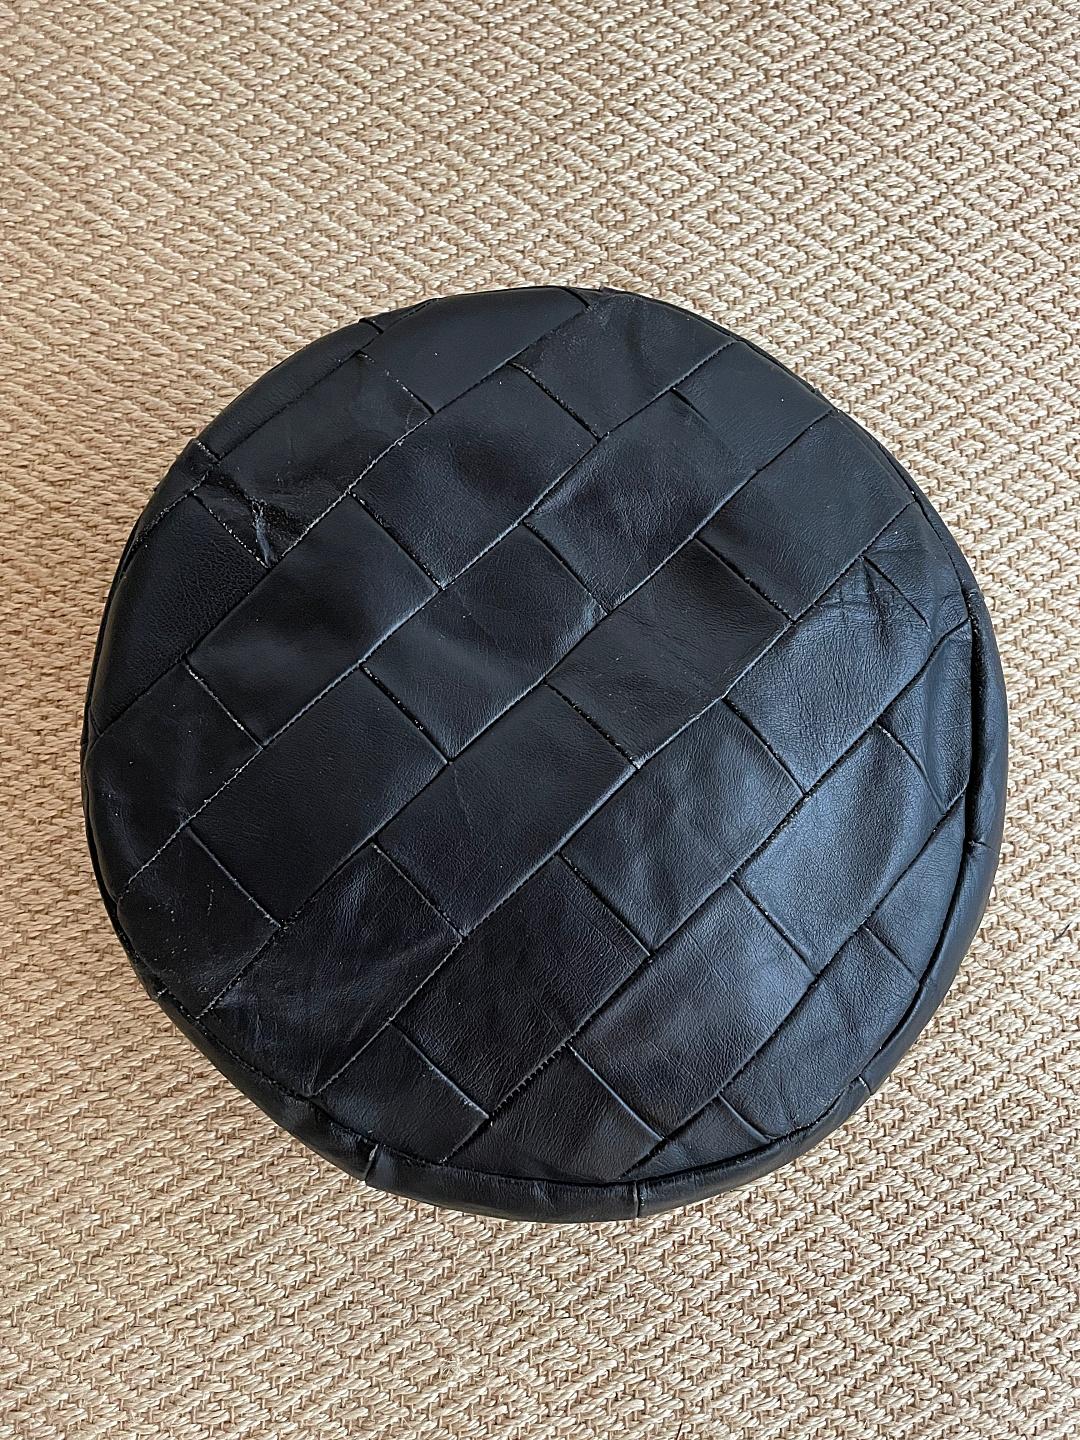 Swiss De Sede DS-80 Black Patchwork Leather Pouf, Ottoman, DeSede Switzerland